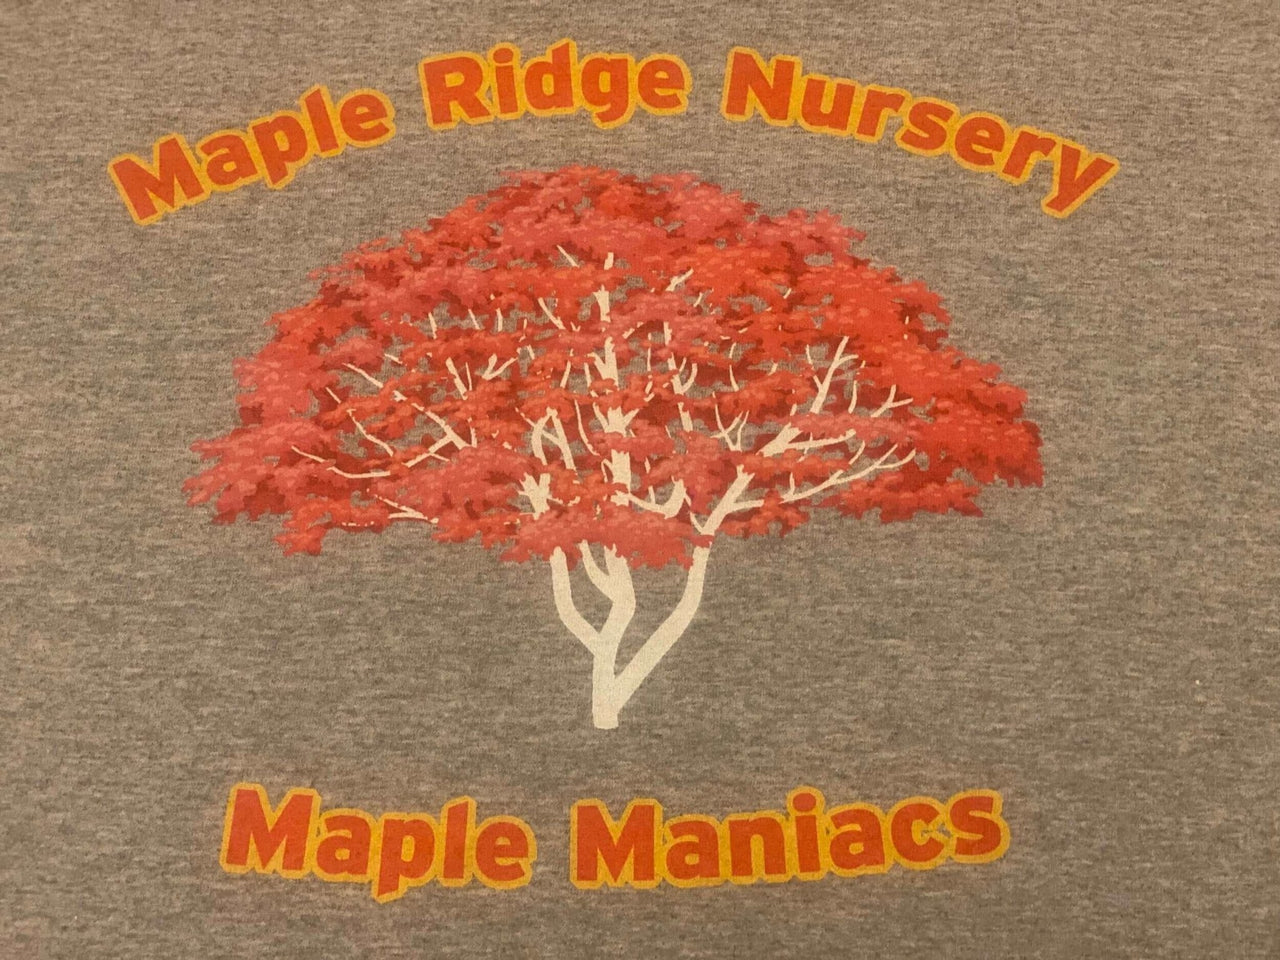 Maple Maniac Tee Shirt - mapleridgenursery